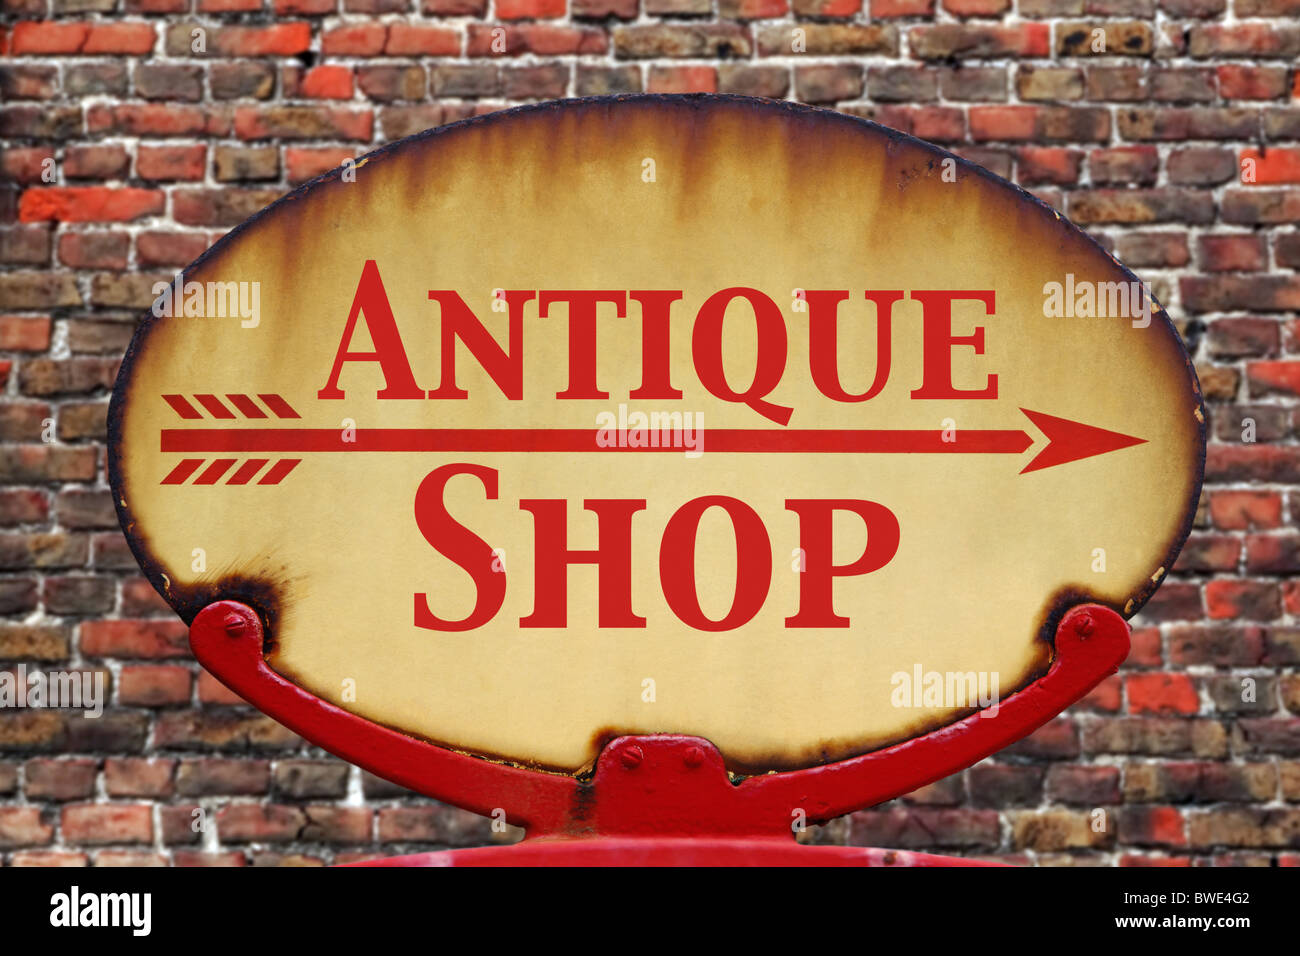 Un vieux rétro rouillé arrow sign avec le texte Antique Shop Banque D'Images